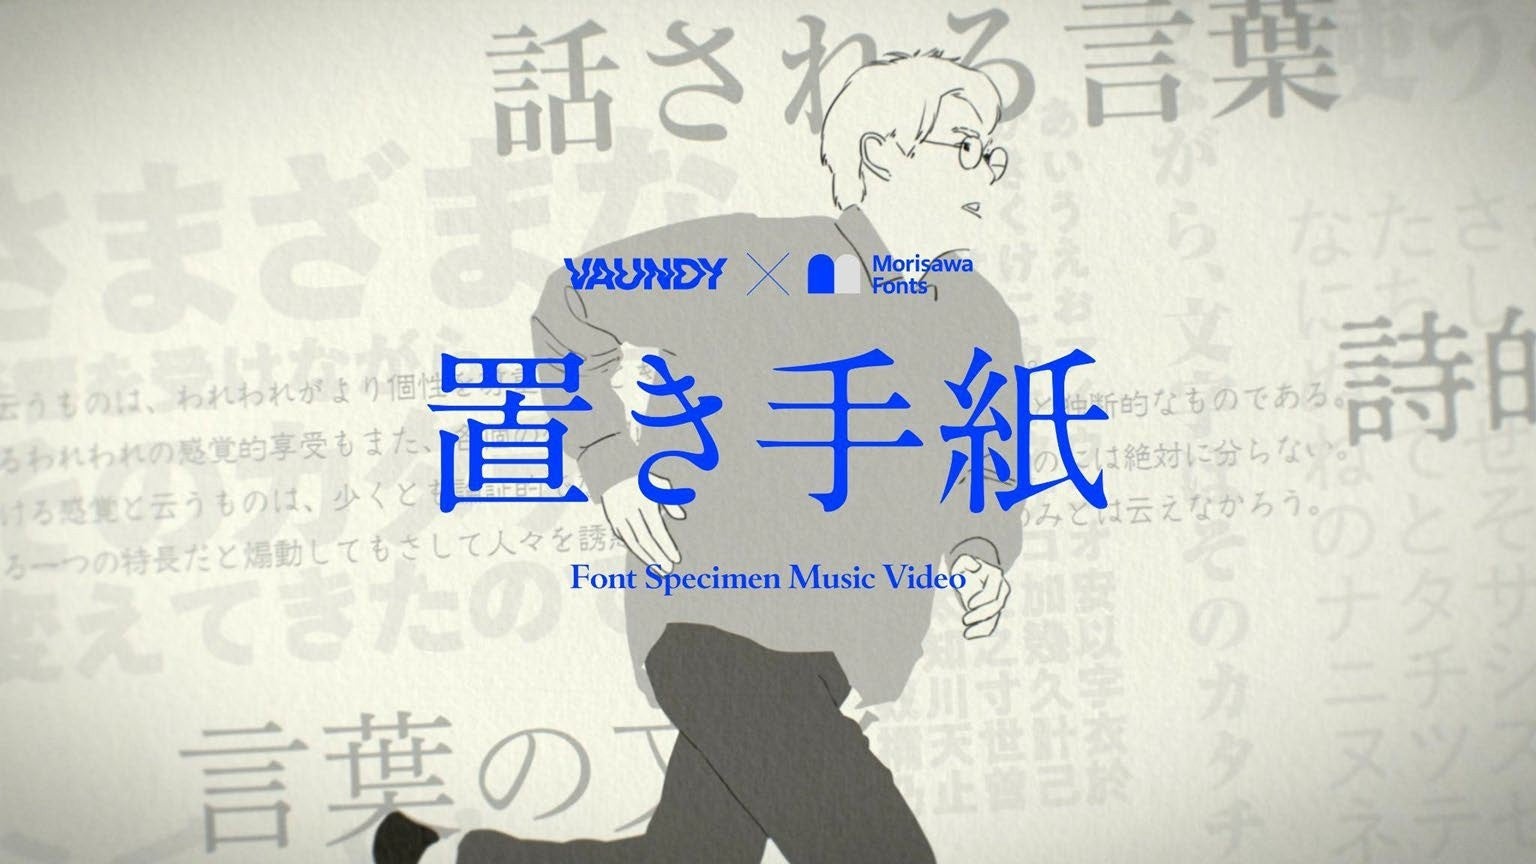 フォントサービス「モリサワ」× マルチアーティスト「Vaundy」! 新曲『置き手紙』の歌詞を77種類のフォントを使って表現した“フォントの見本帳”のようなクラフト感満載のMVが公開！